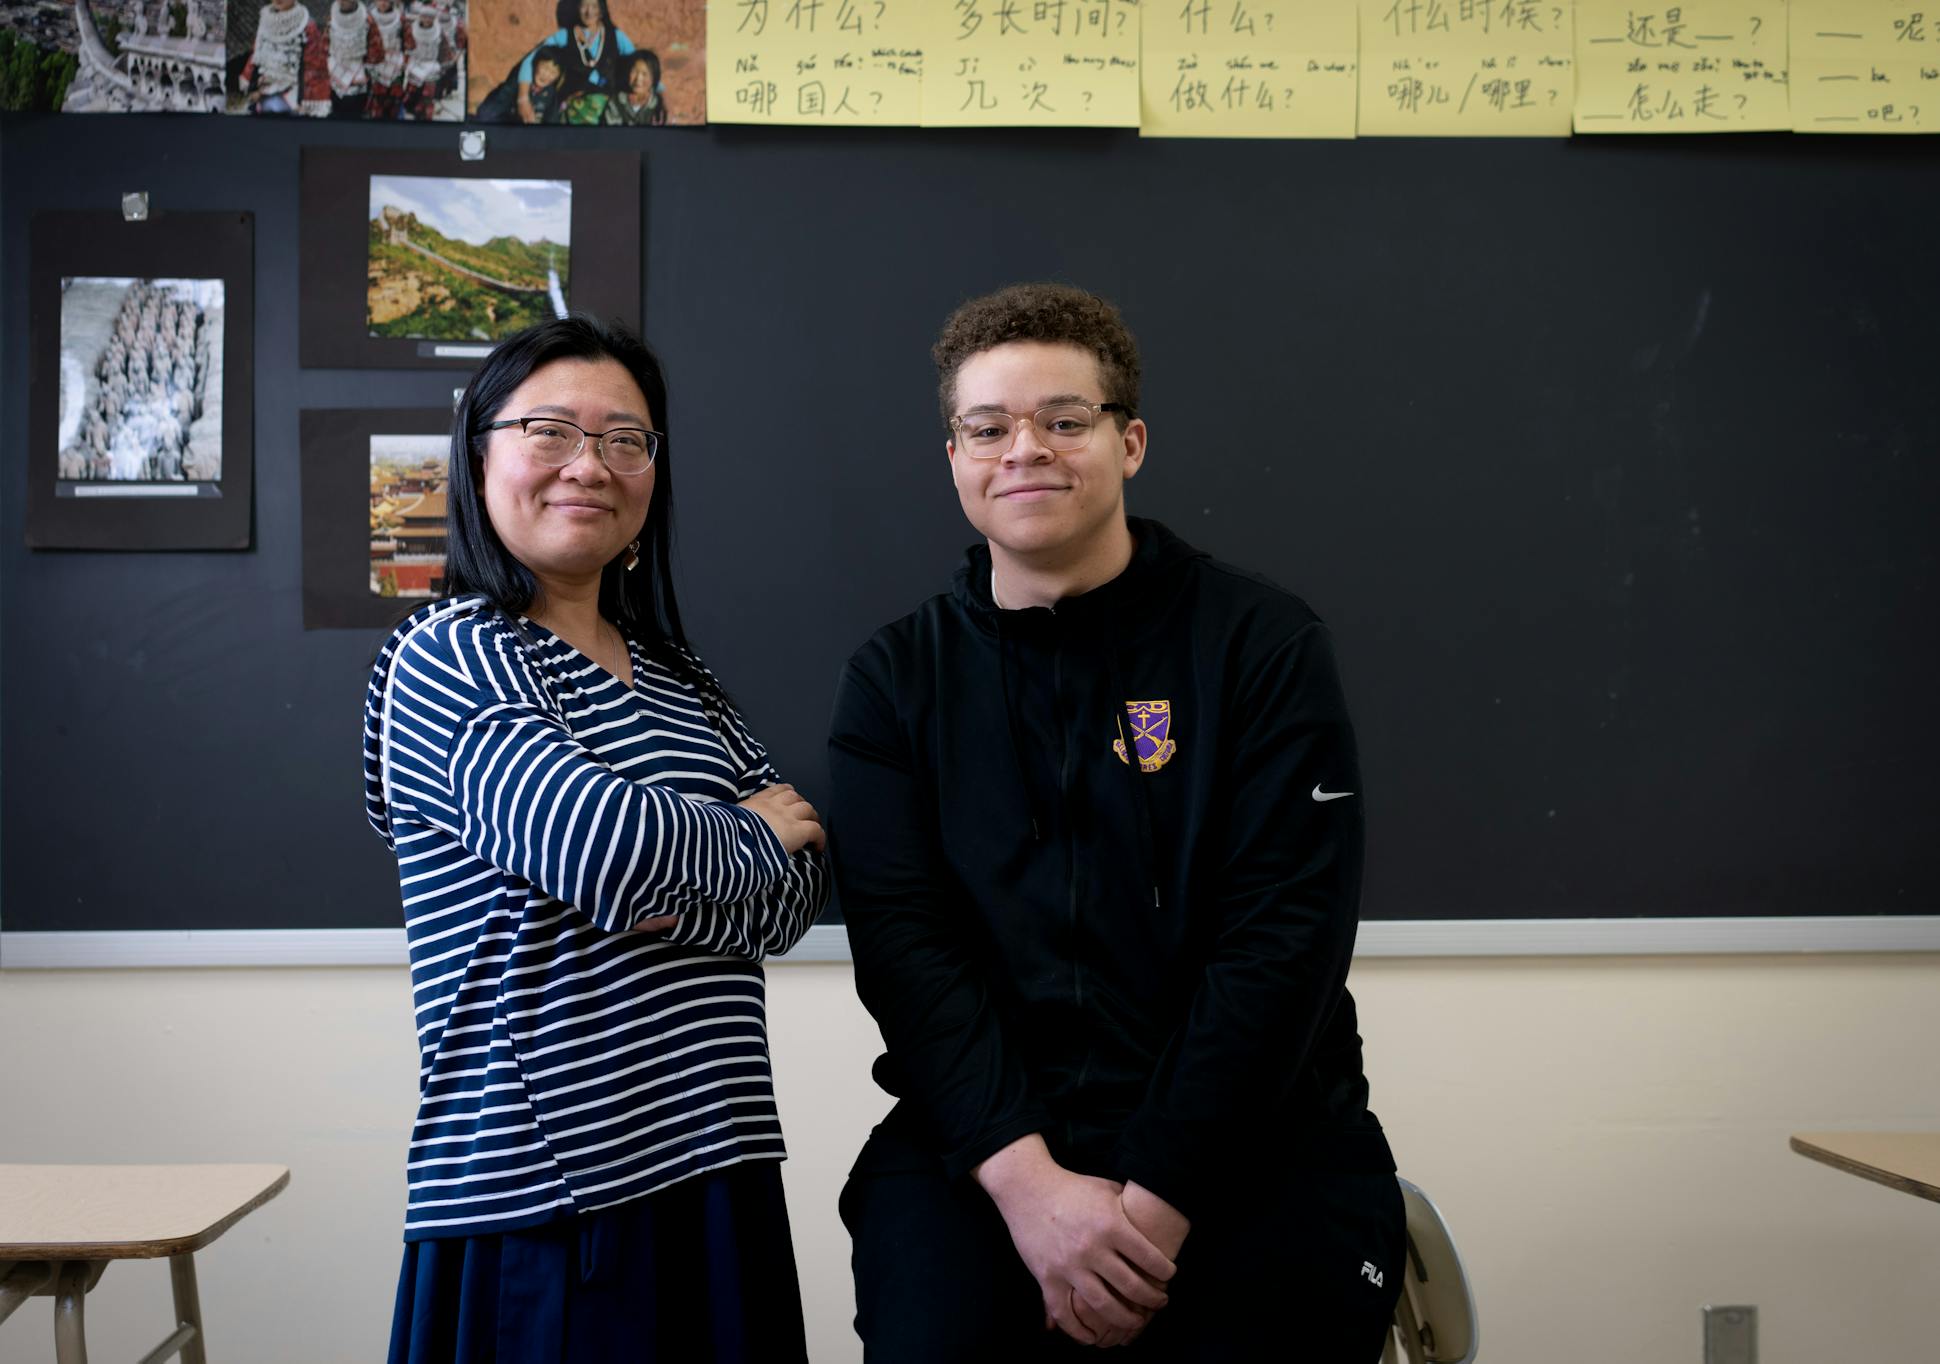 Cretin-Derham Hall High School Mandarin teacher Nan Wang inspired student Wyatte Nissen.